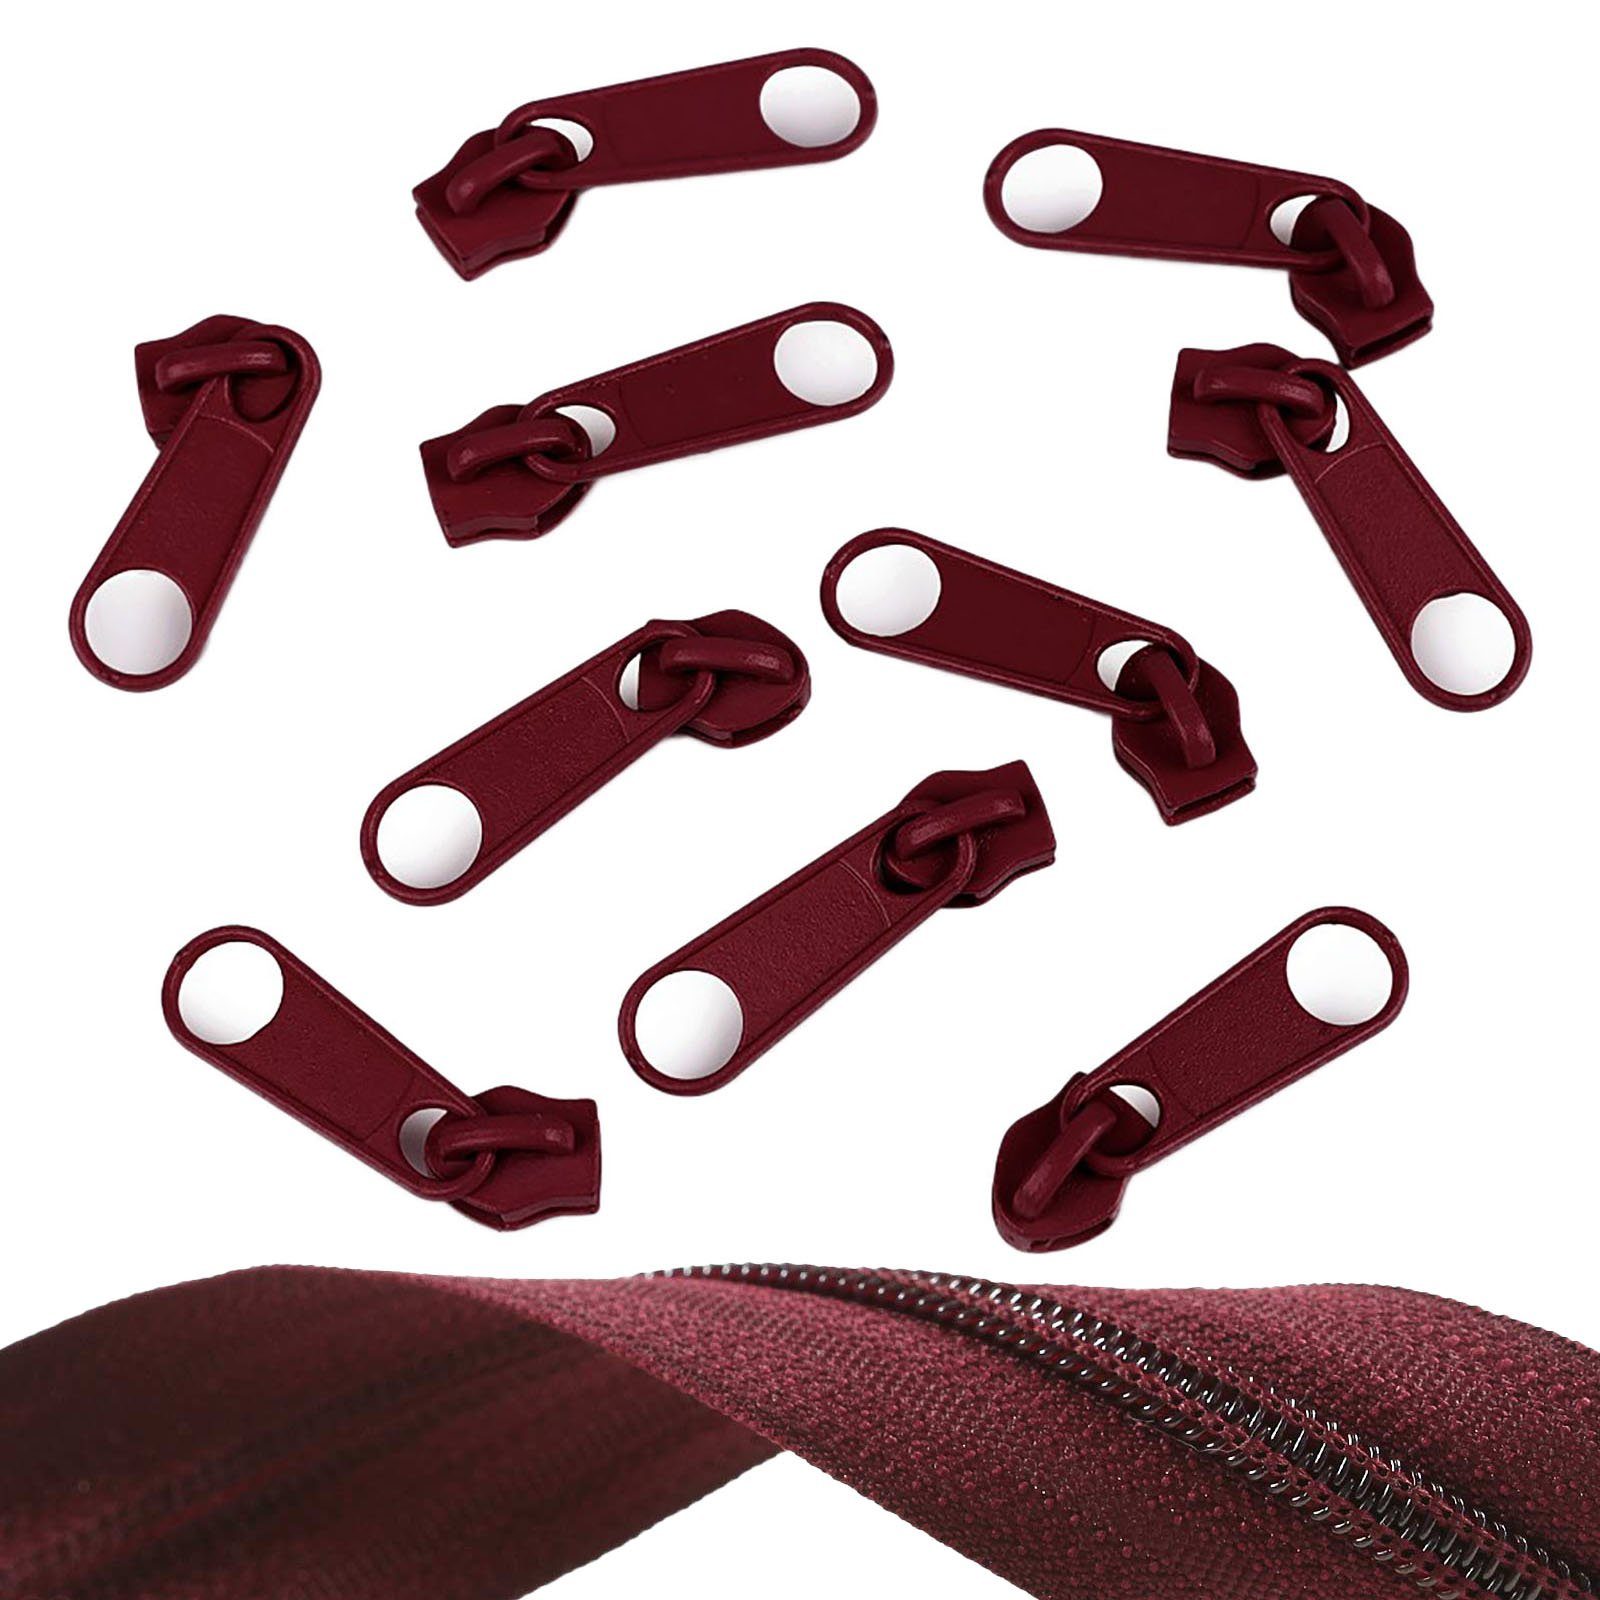 maDDma Reißverschluss 10 Reißverschluss Zipper für Endlosreißverschluss, 5mm, bordeaux